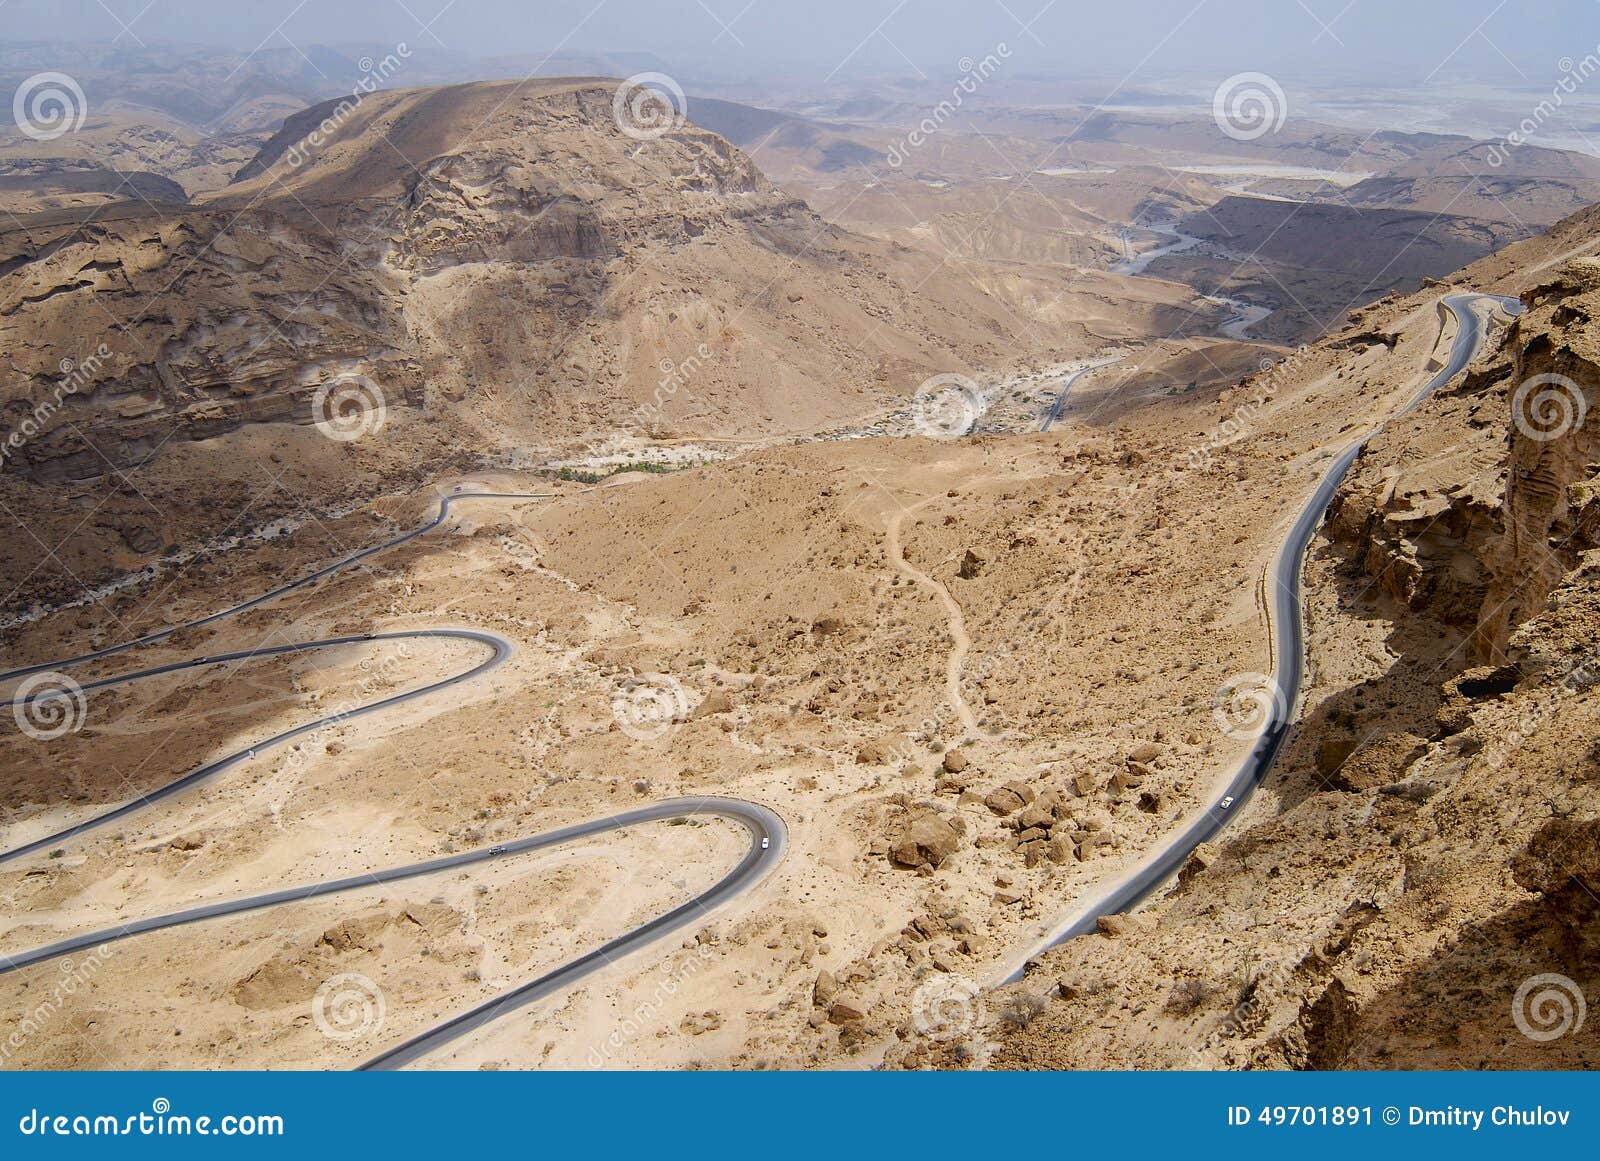 winding mountain road from al mukalla to aden in yemen.